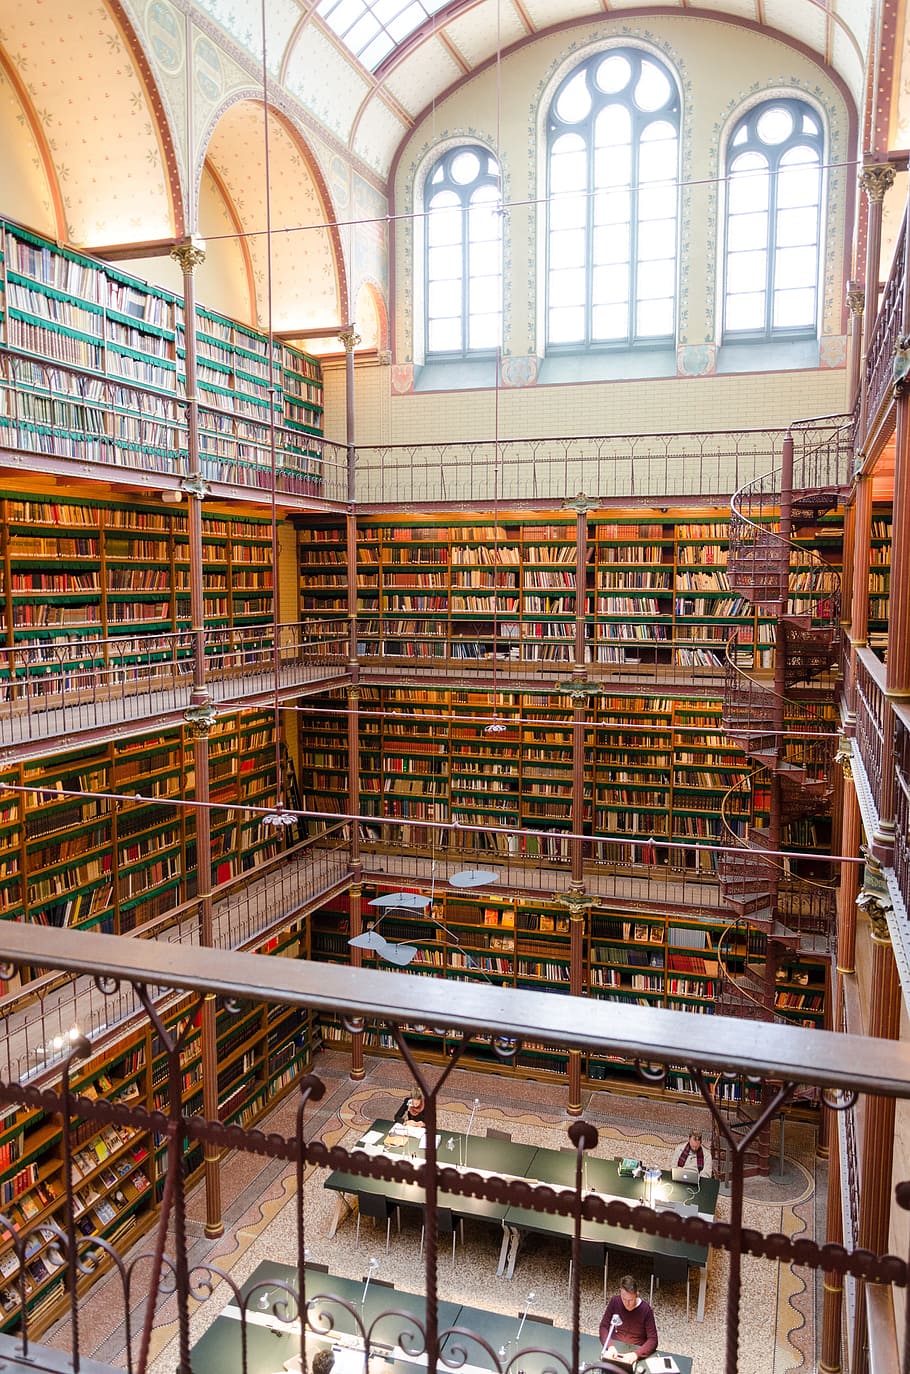 interior de la biblioteca, biblioteca, interior, libros, amsterdam, rijksmuseum, visitantes, estante, estantería, educación